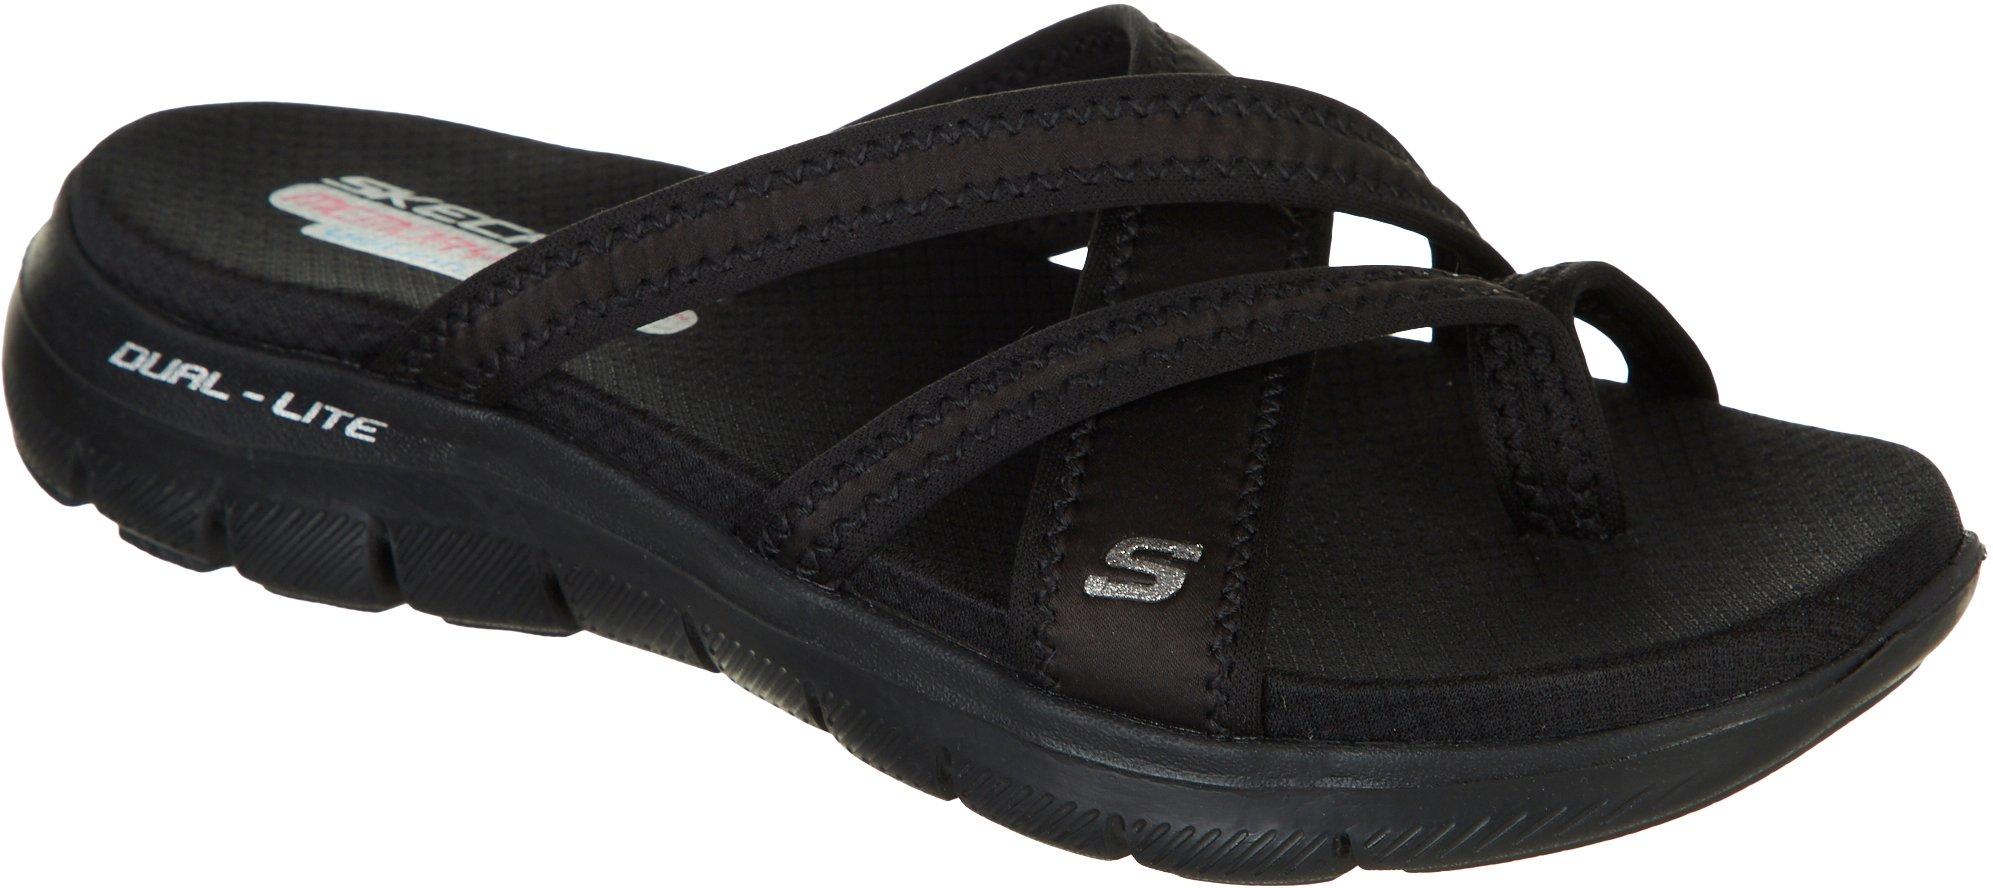 skechers memory foam sandals